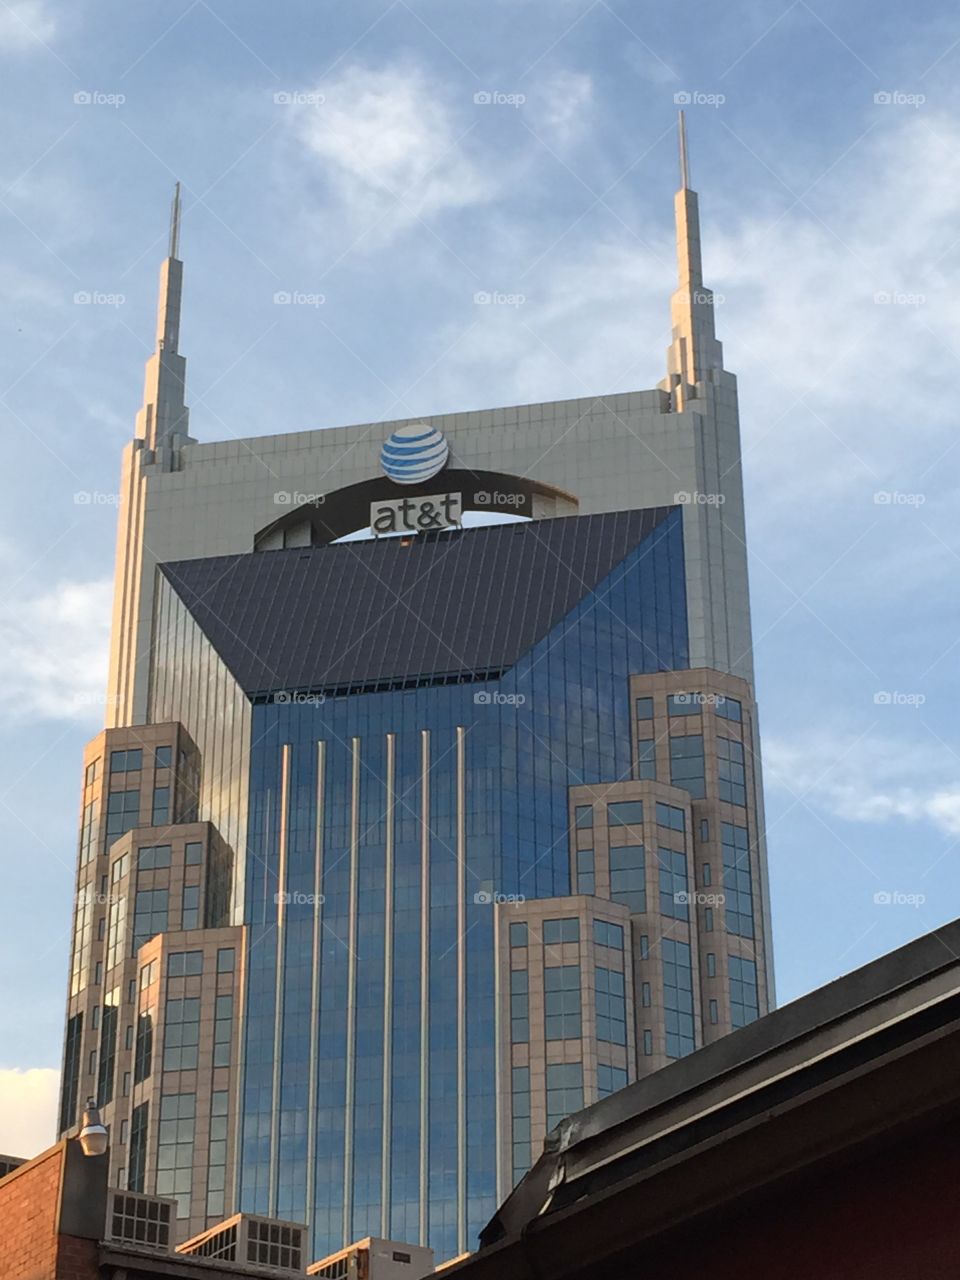 Nashville Rooftop. AT&T building in Nashville 